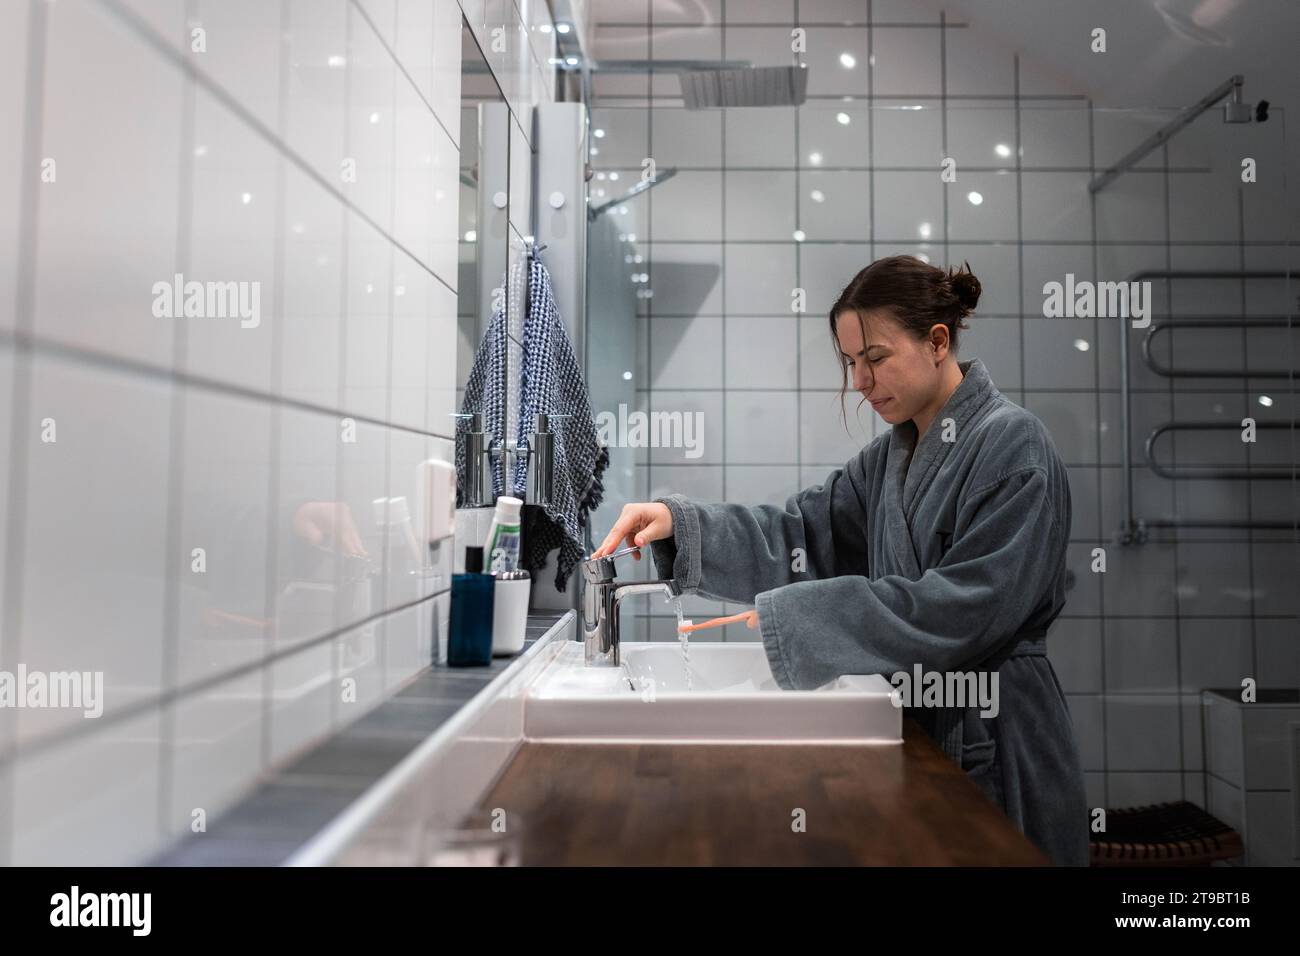 Seitenansicht einer jungen Frau, die im Waschbecken im Bad Zahnbürste wäscht Stockfoto